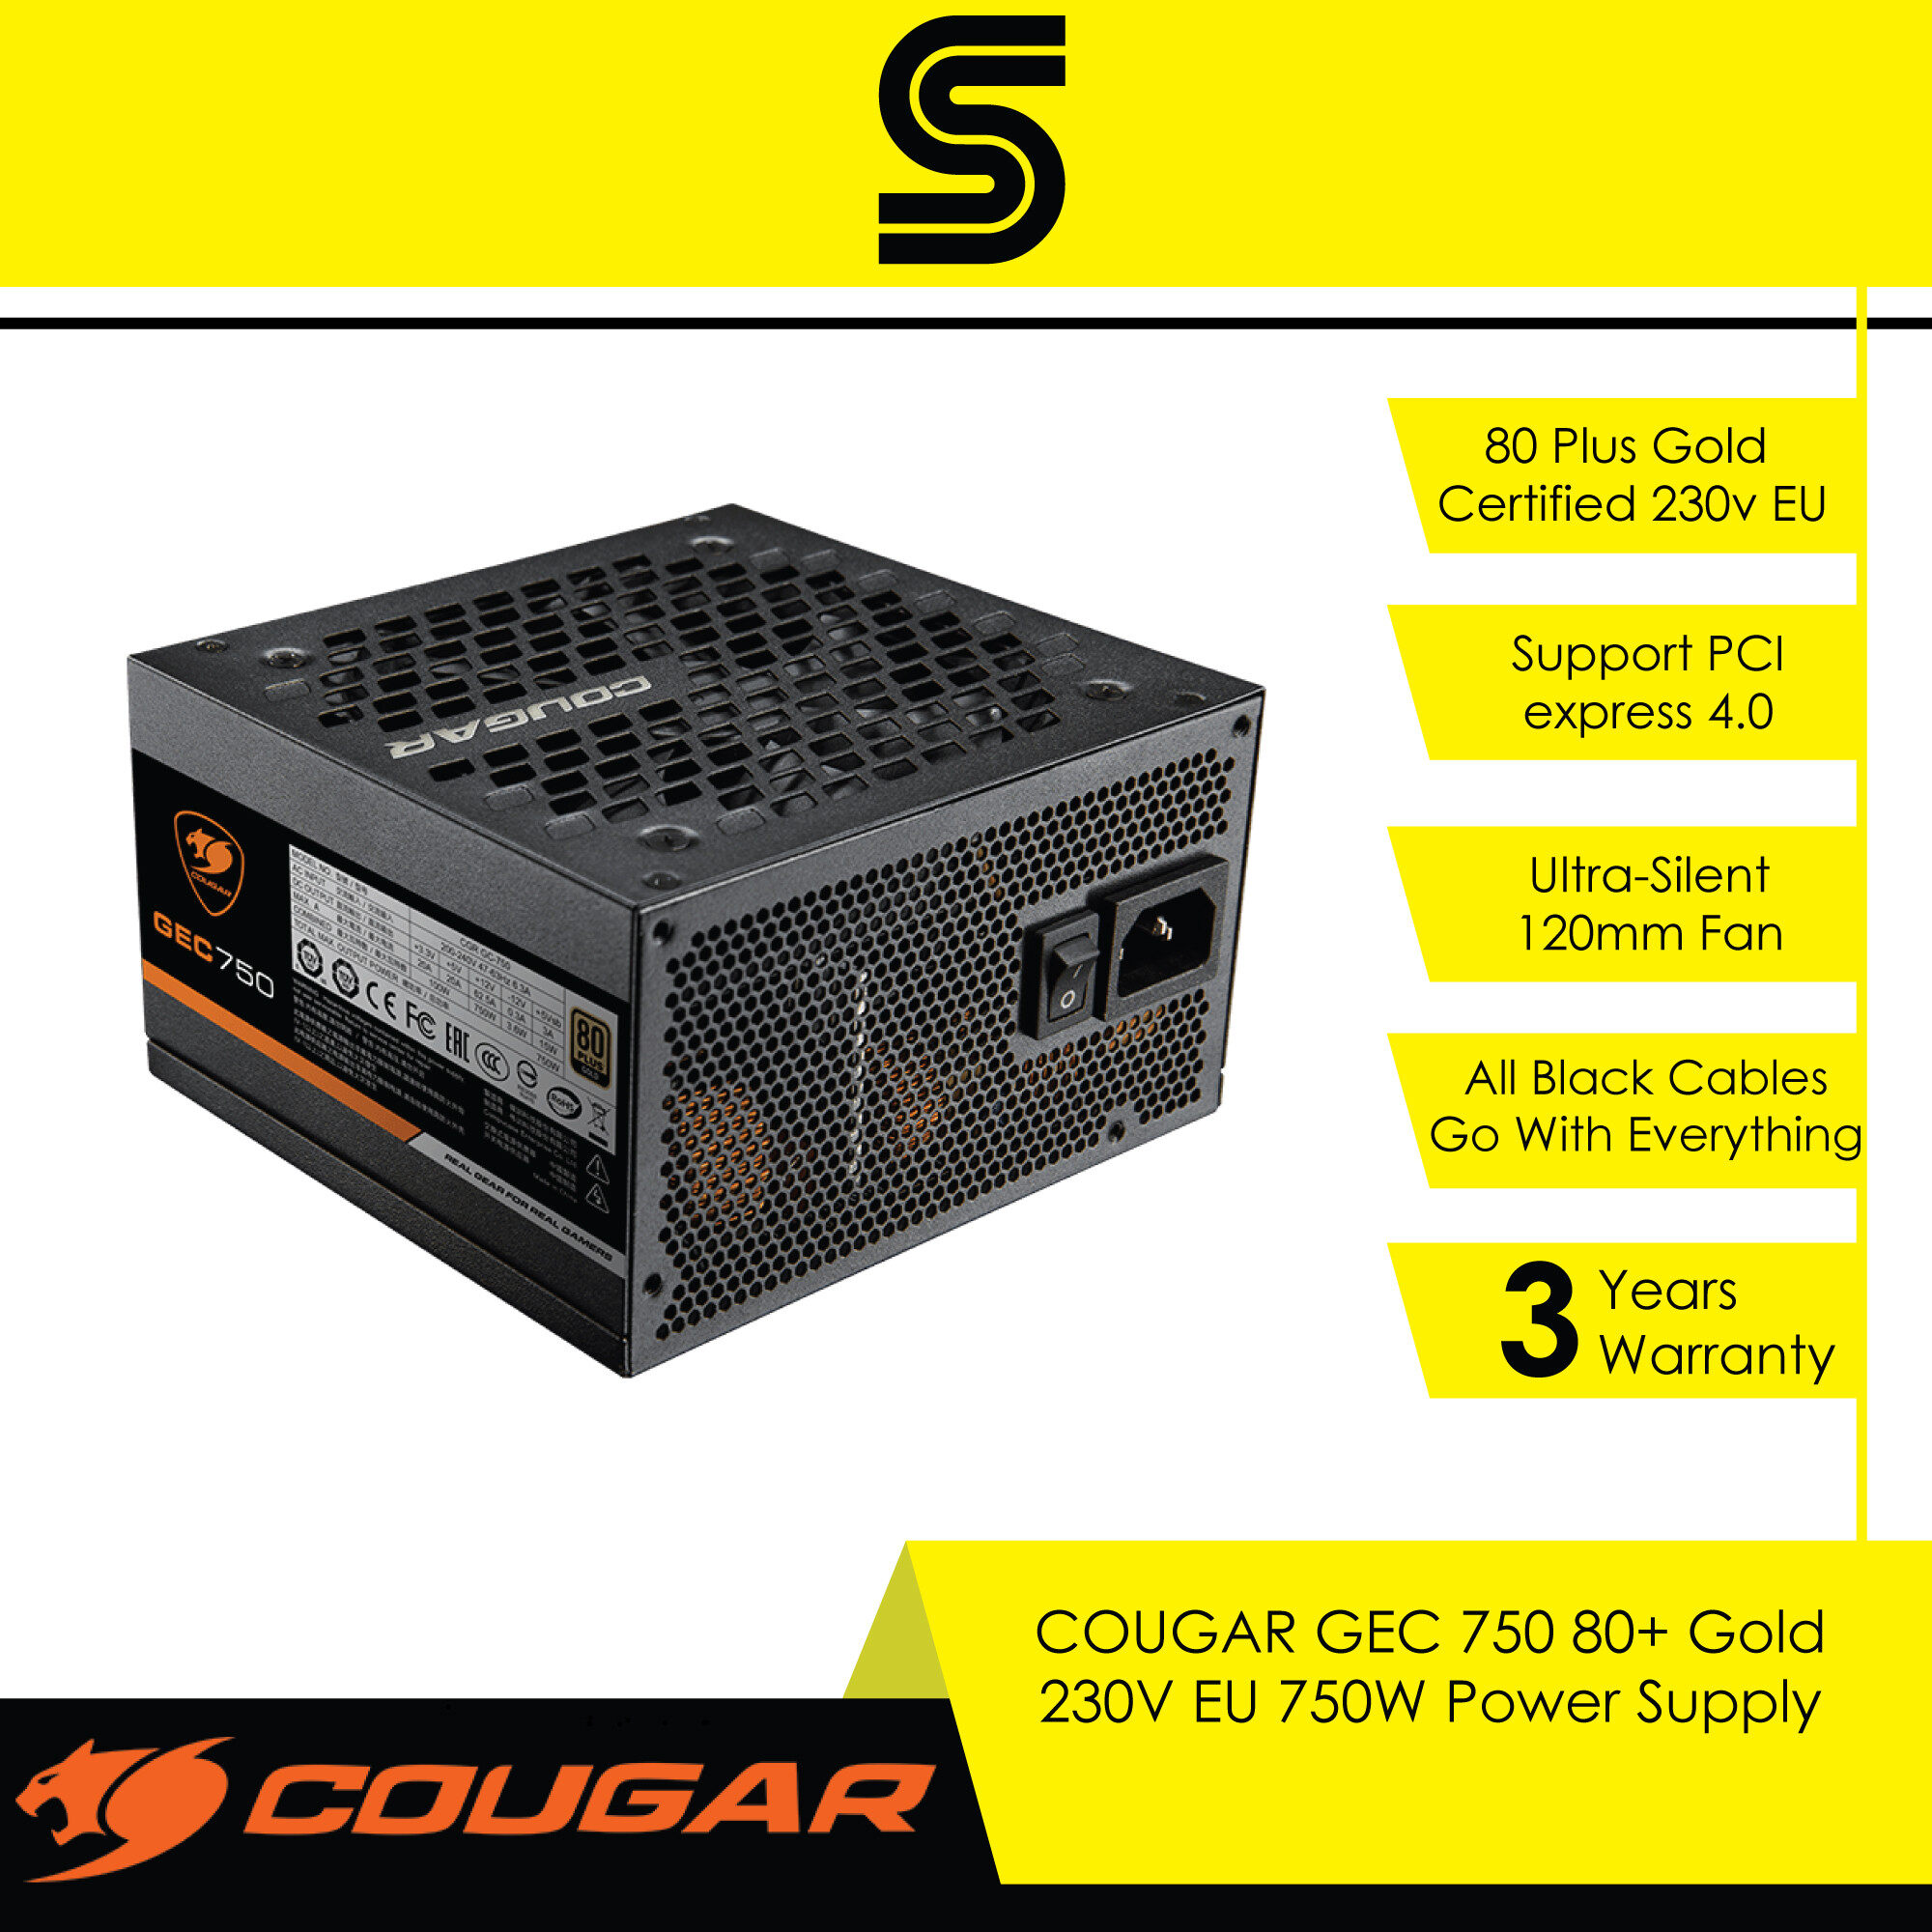 COUGAR GEC 750 80+ Gold 230v EU 750w Power Supply